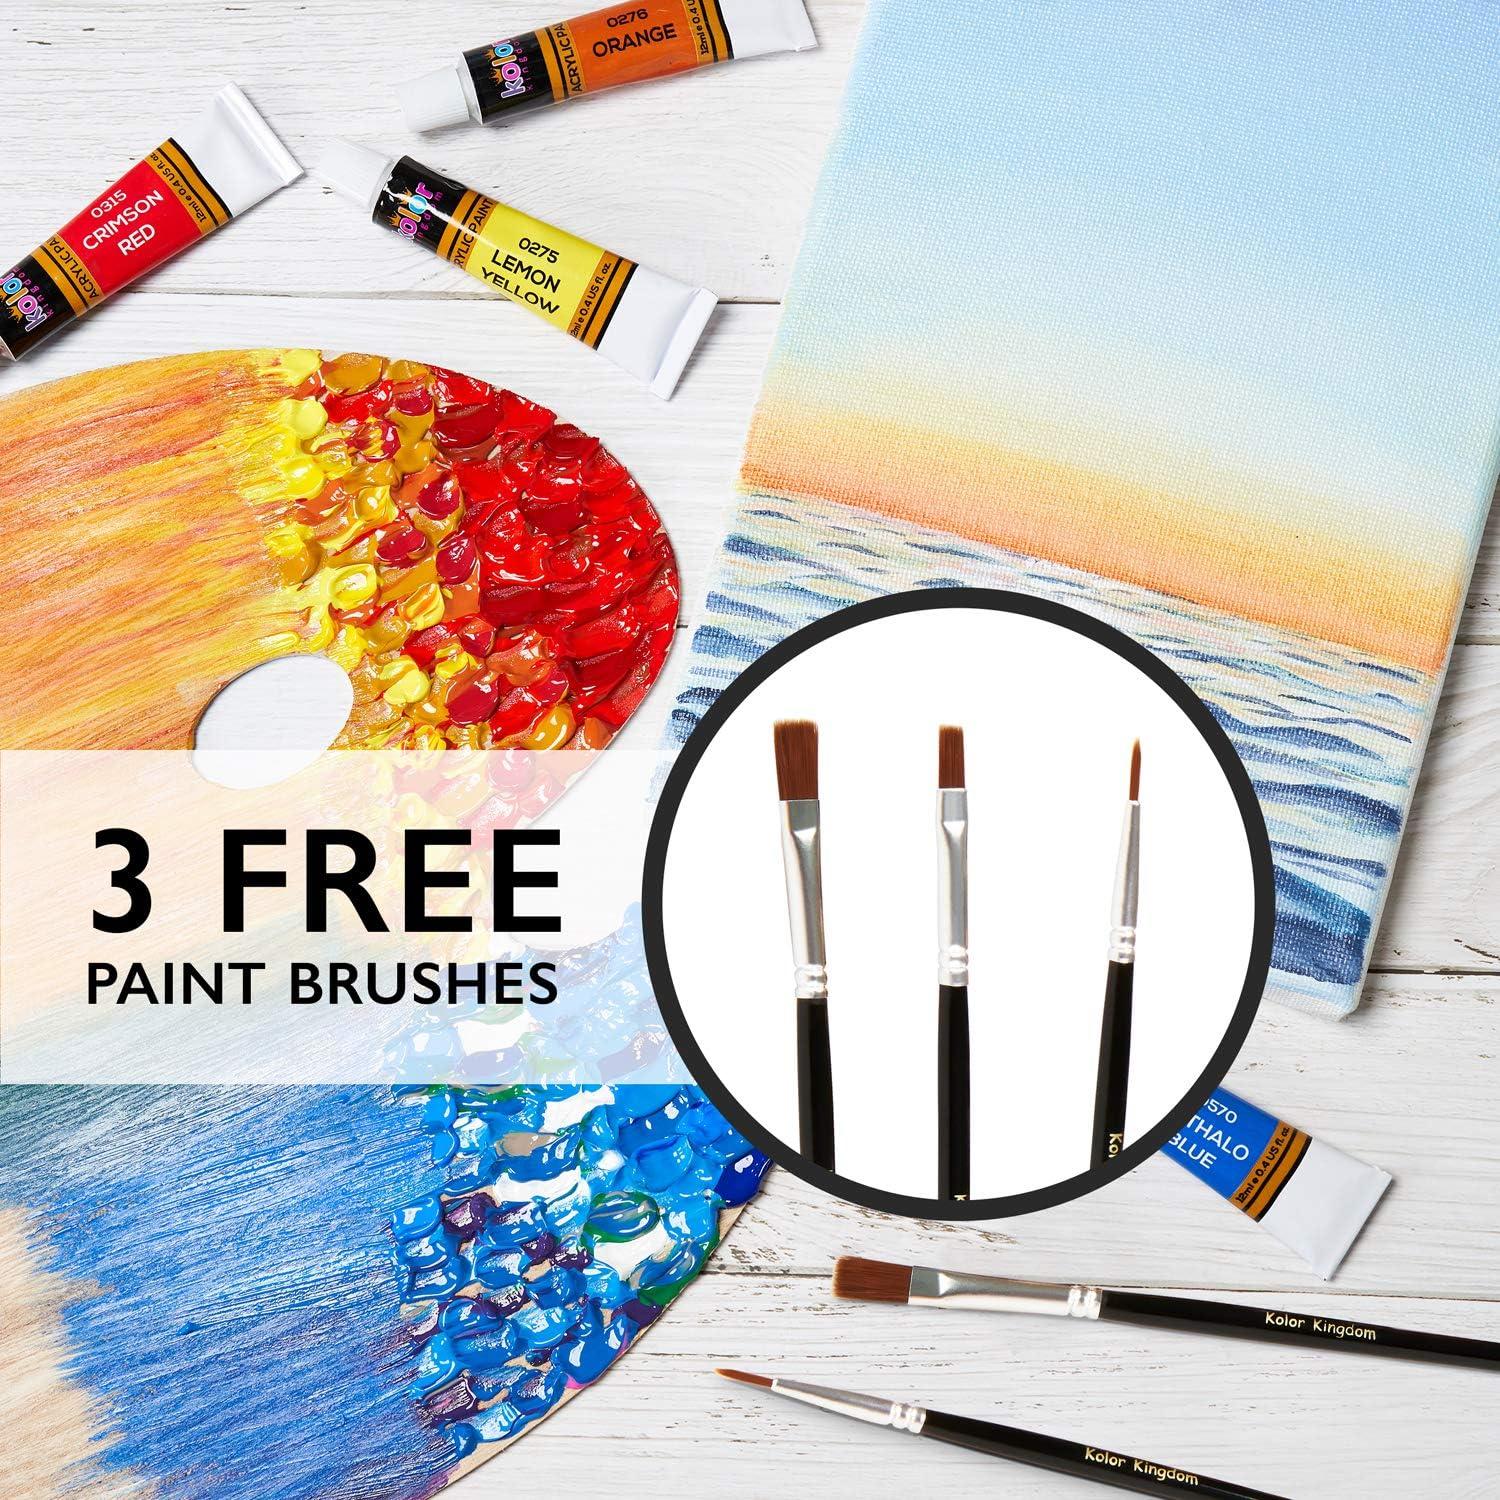 Acrylic Paint Set 24 Colors (0.41 oz 12 ml) Paint Kit For Artists